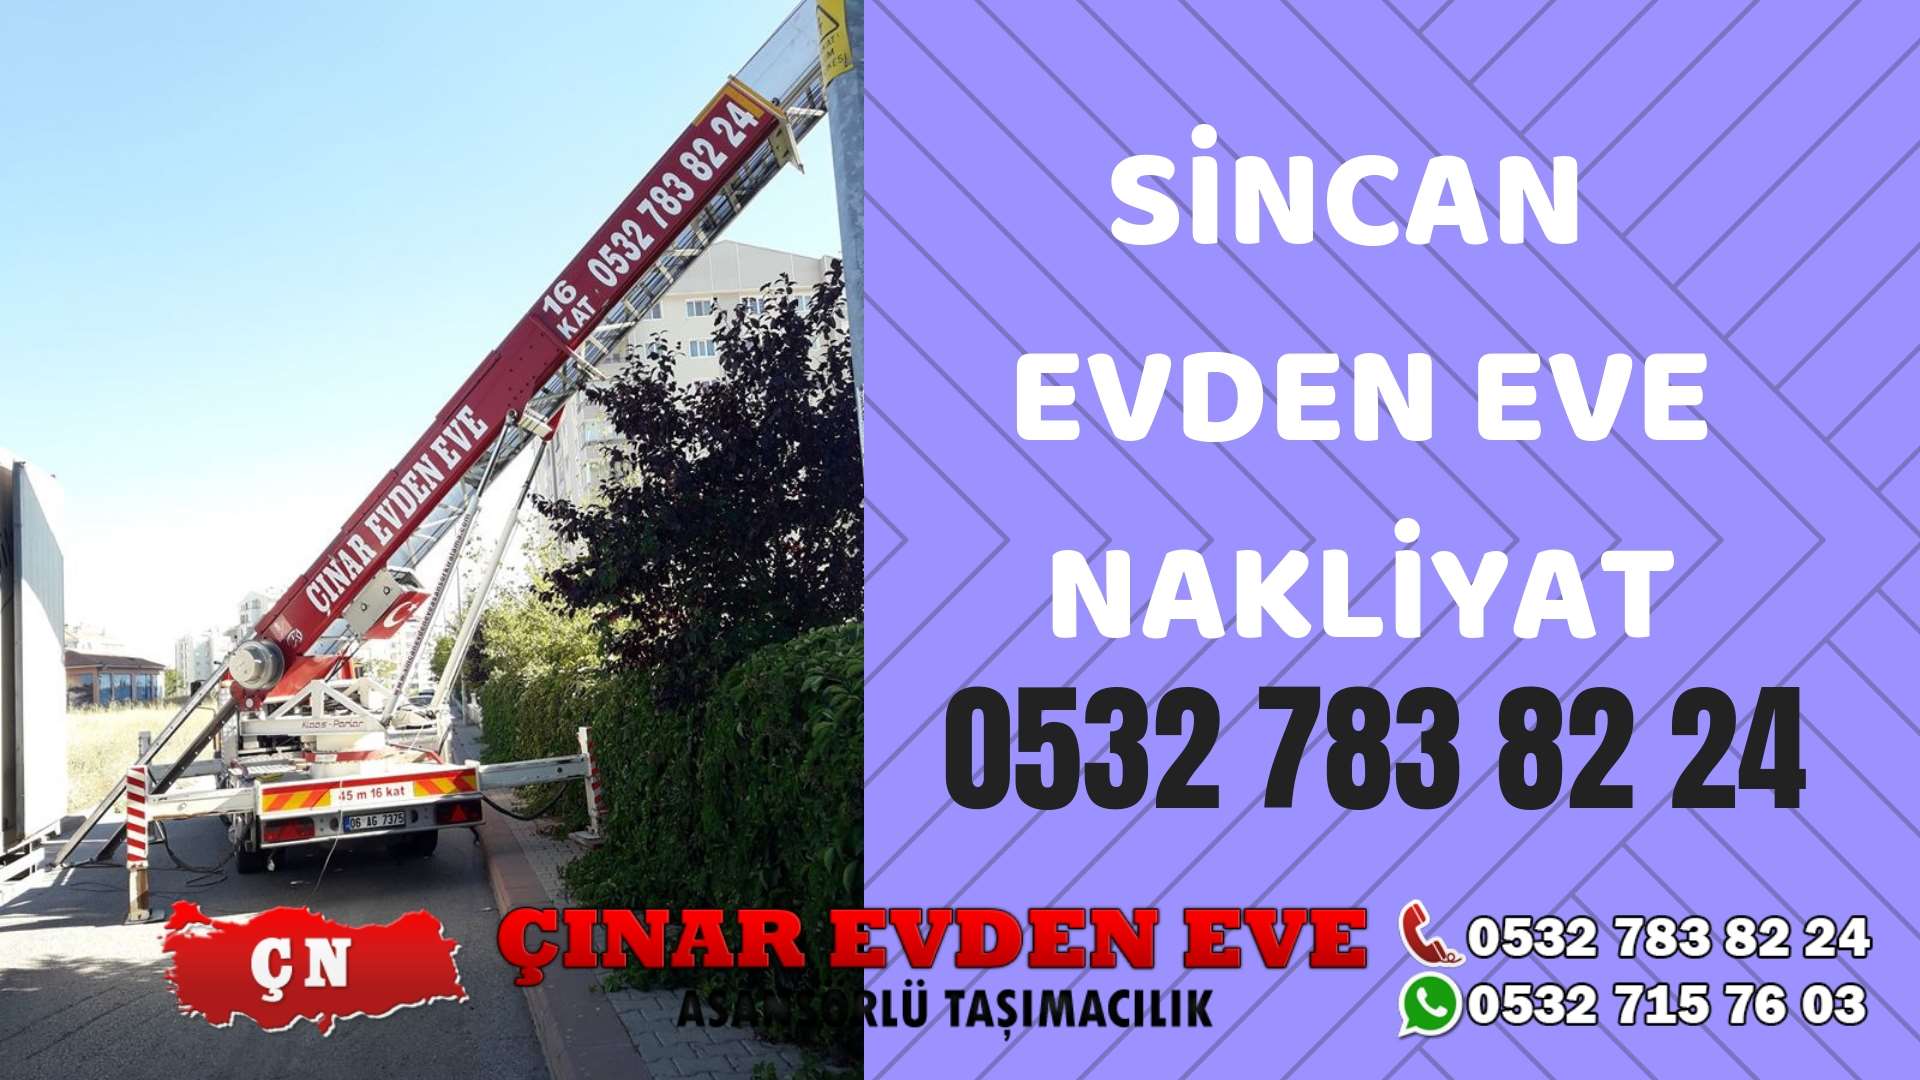 Ankara Elmadağ Sincan evden eve asansörlü nakliyat en ucuz nakliye 0532 715 76 03